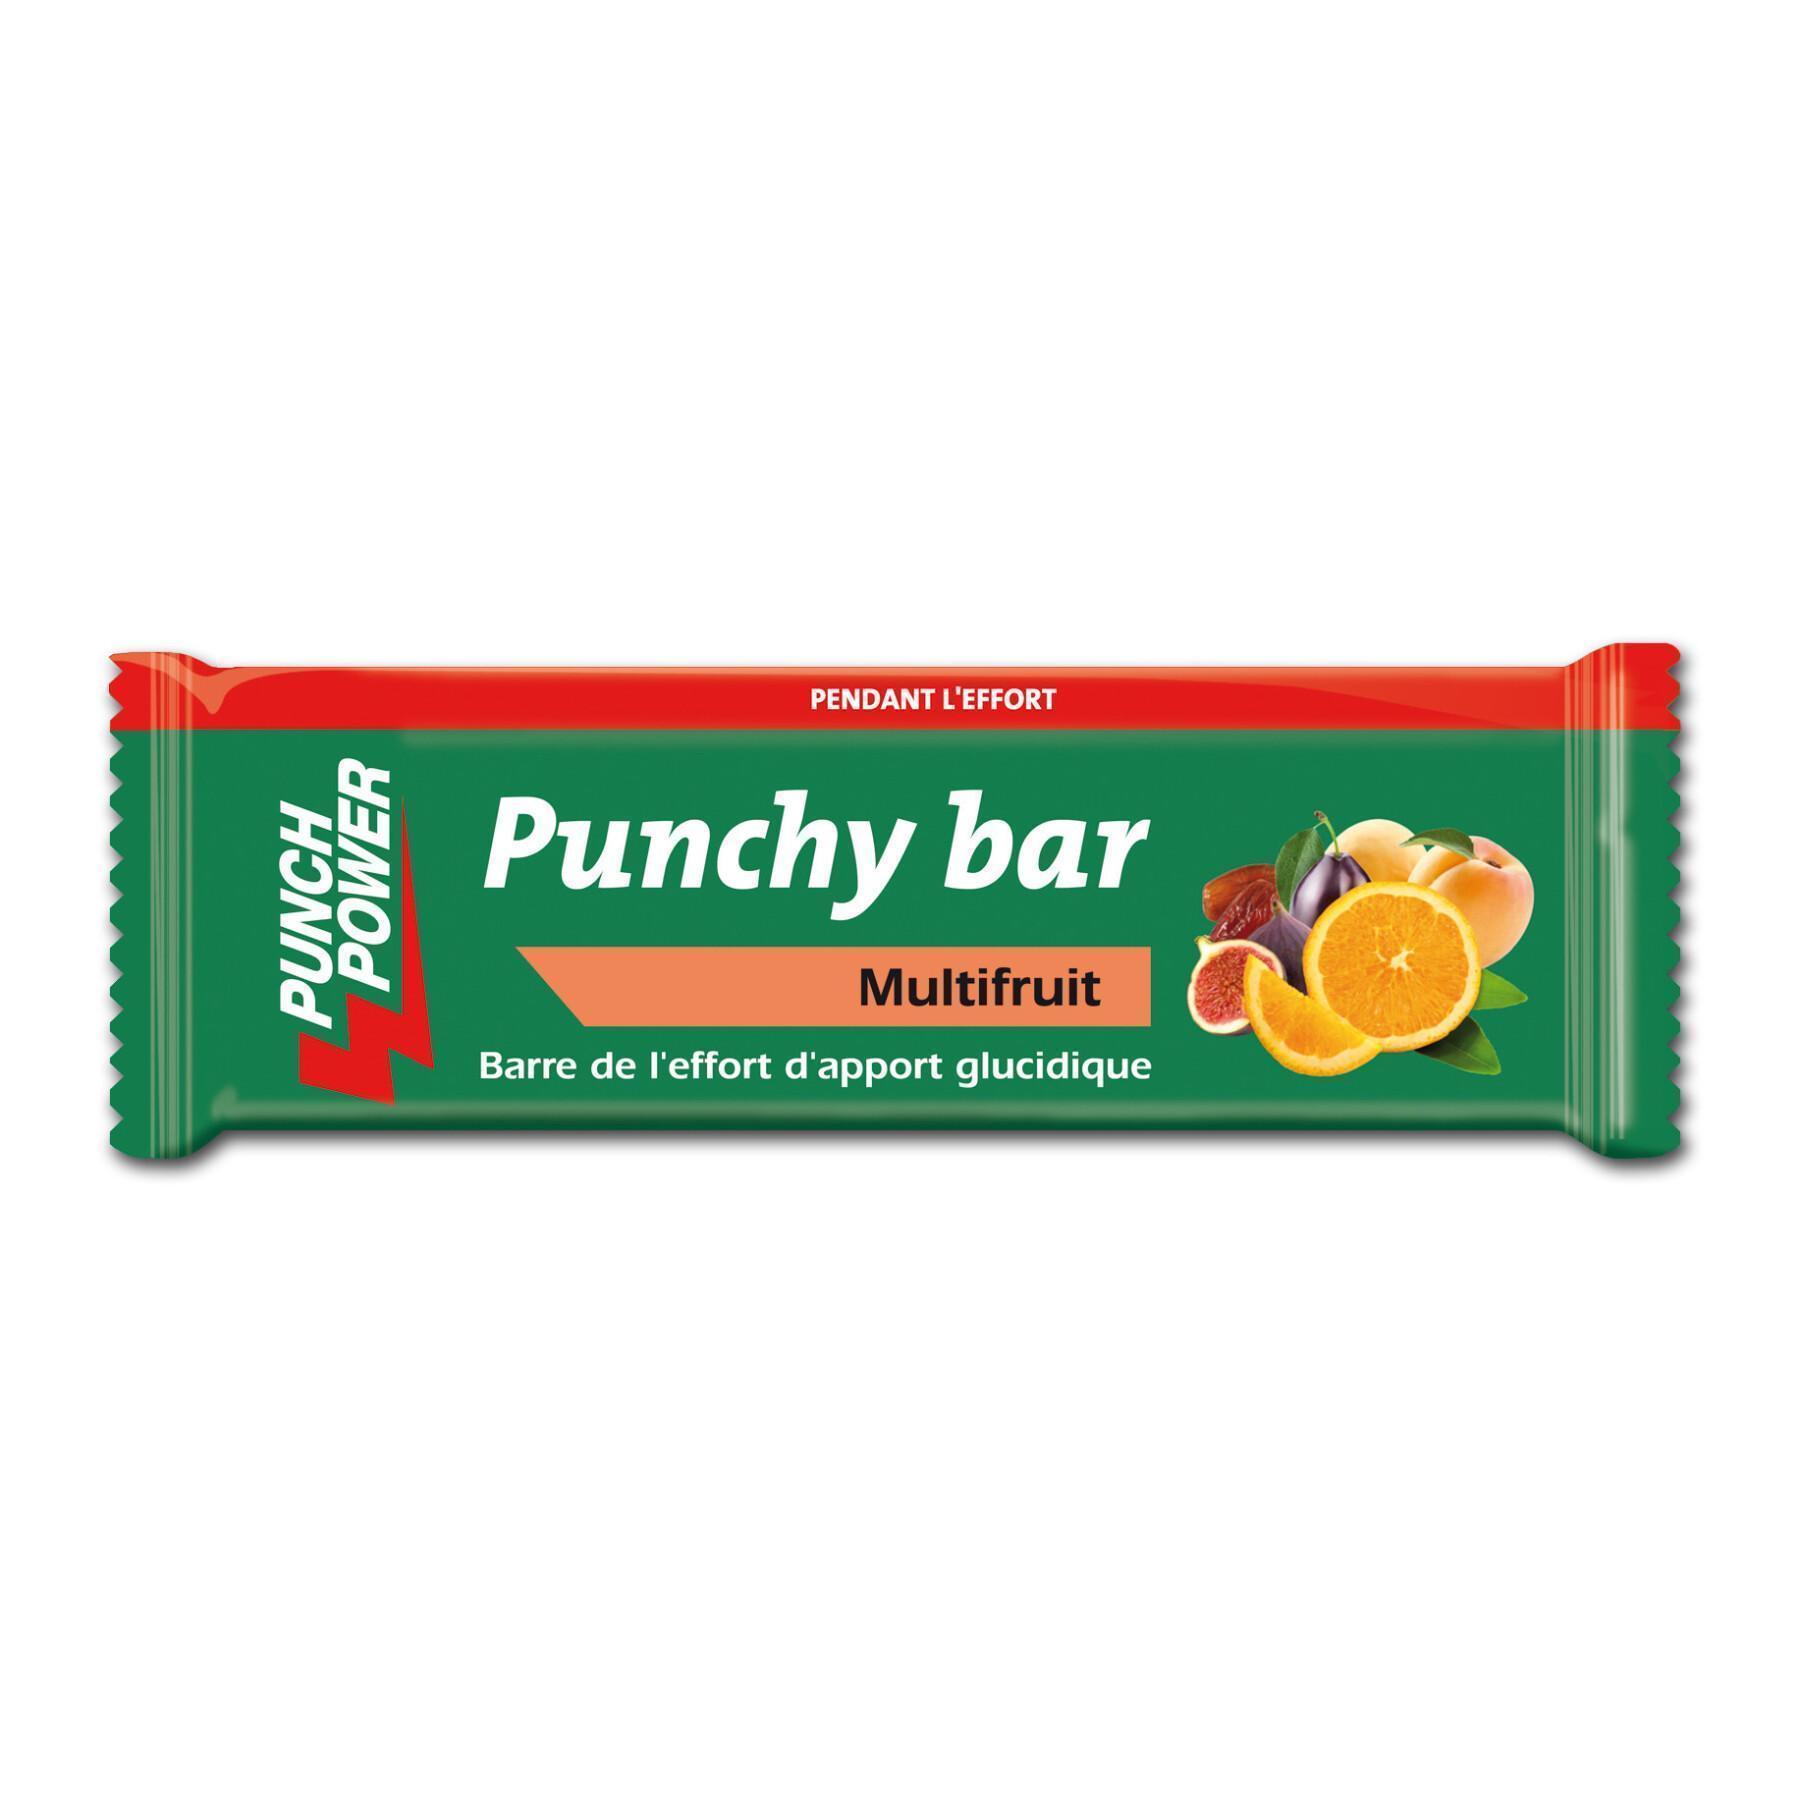 Mostrar 40 barras de energia Punch Power Punchybar Multifruit